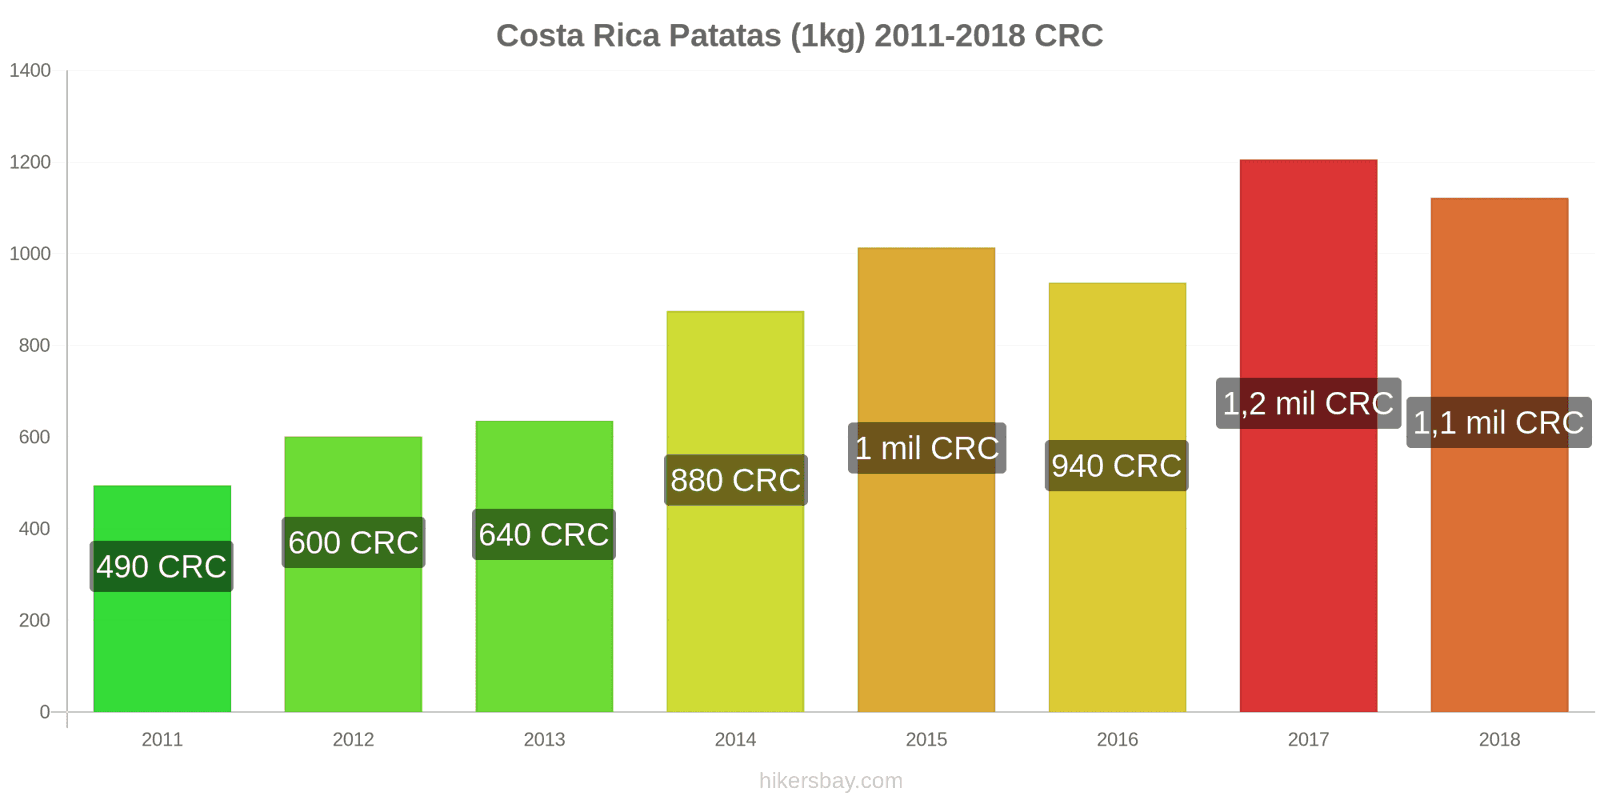 Costa Rica cambios de precios Patatas (1kg) hikersbay.com